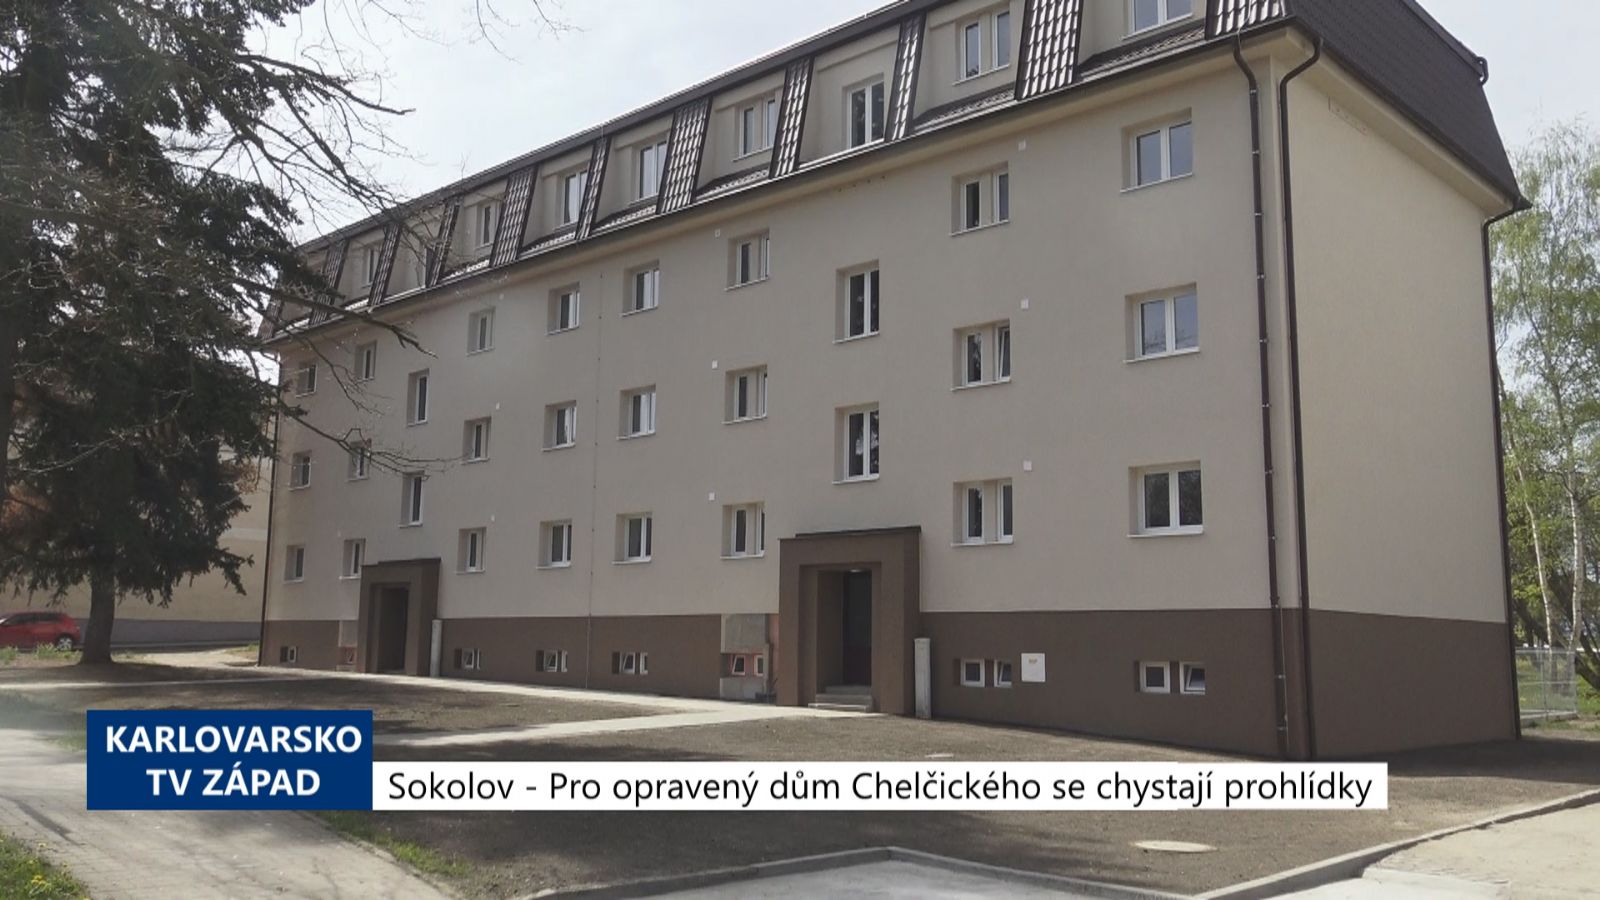 Sokolov: Pro opravený dům V Chelčického se chystají prohlídky (TV Západ)